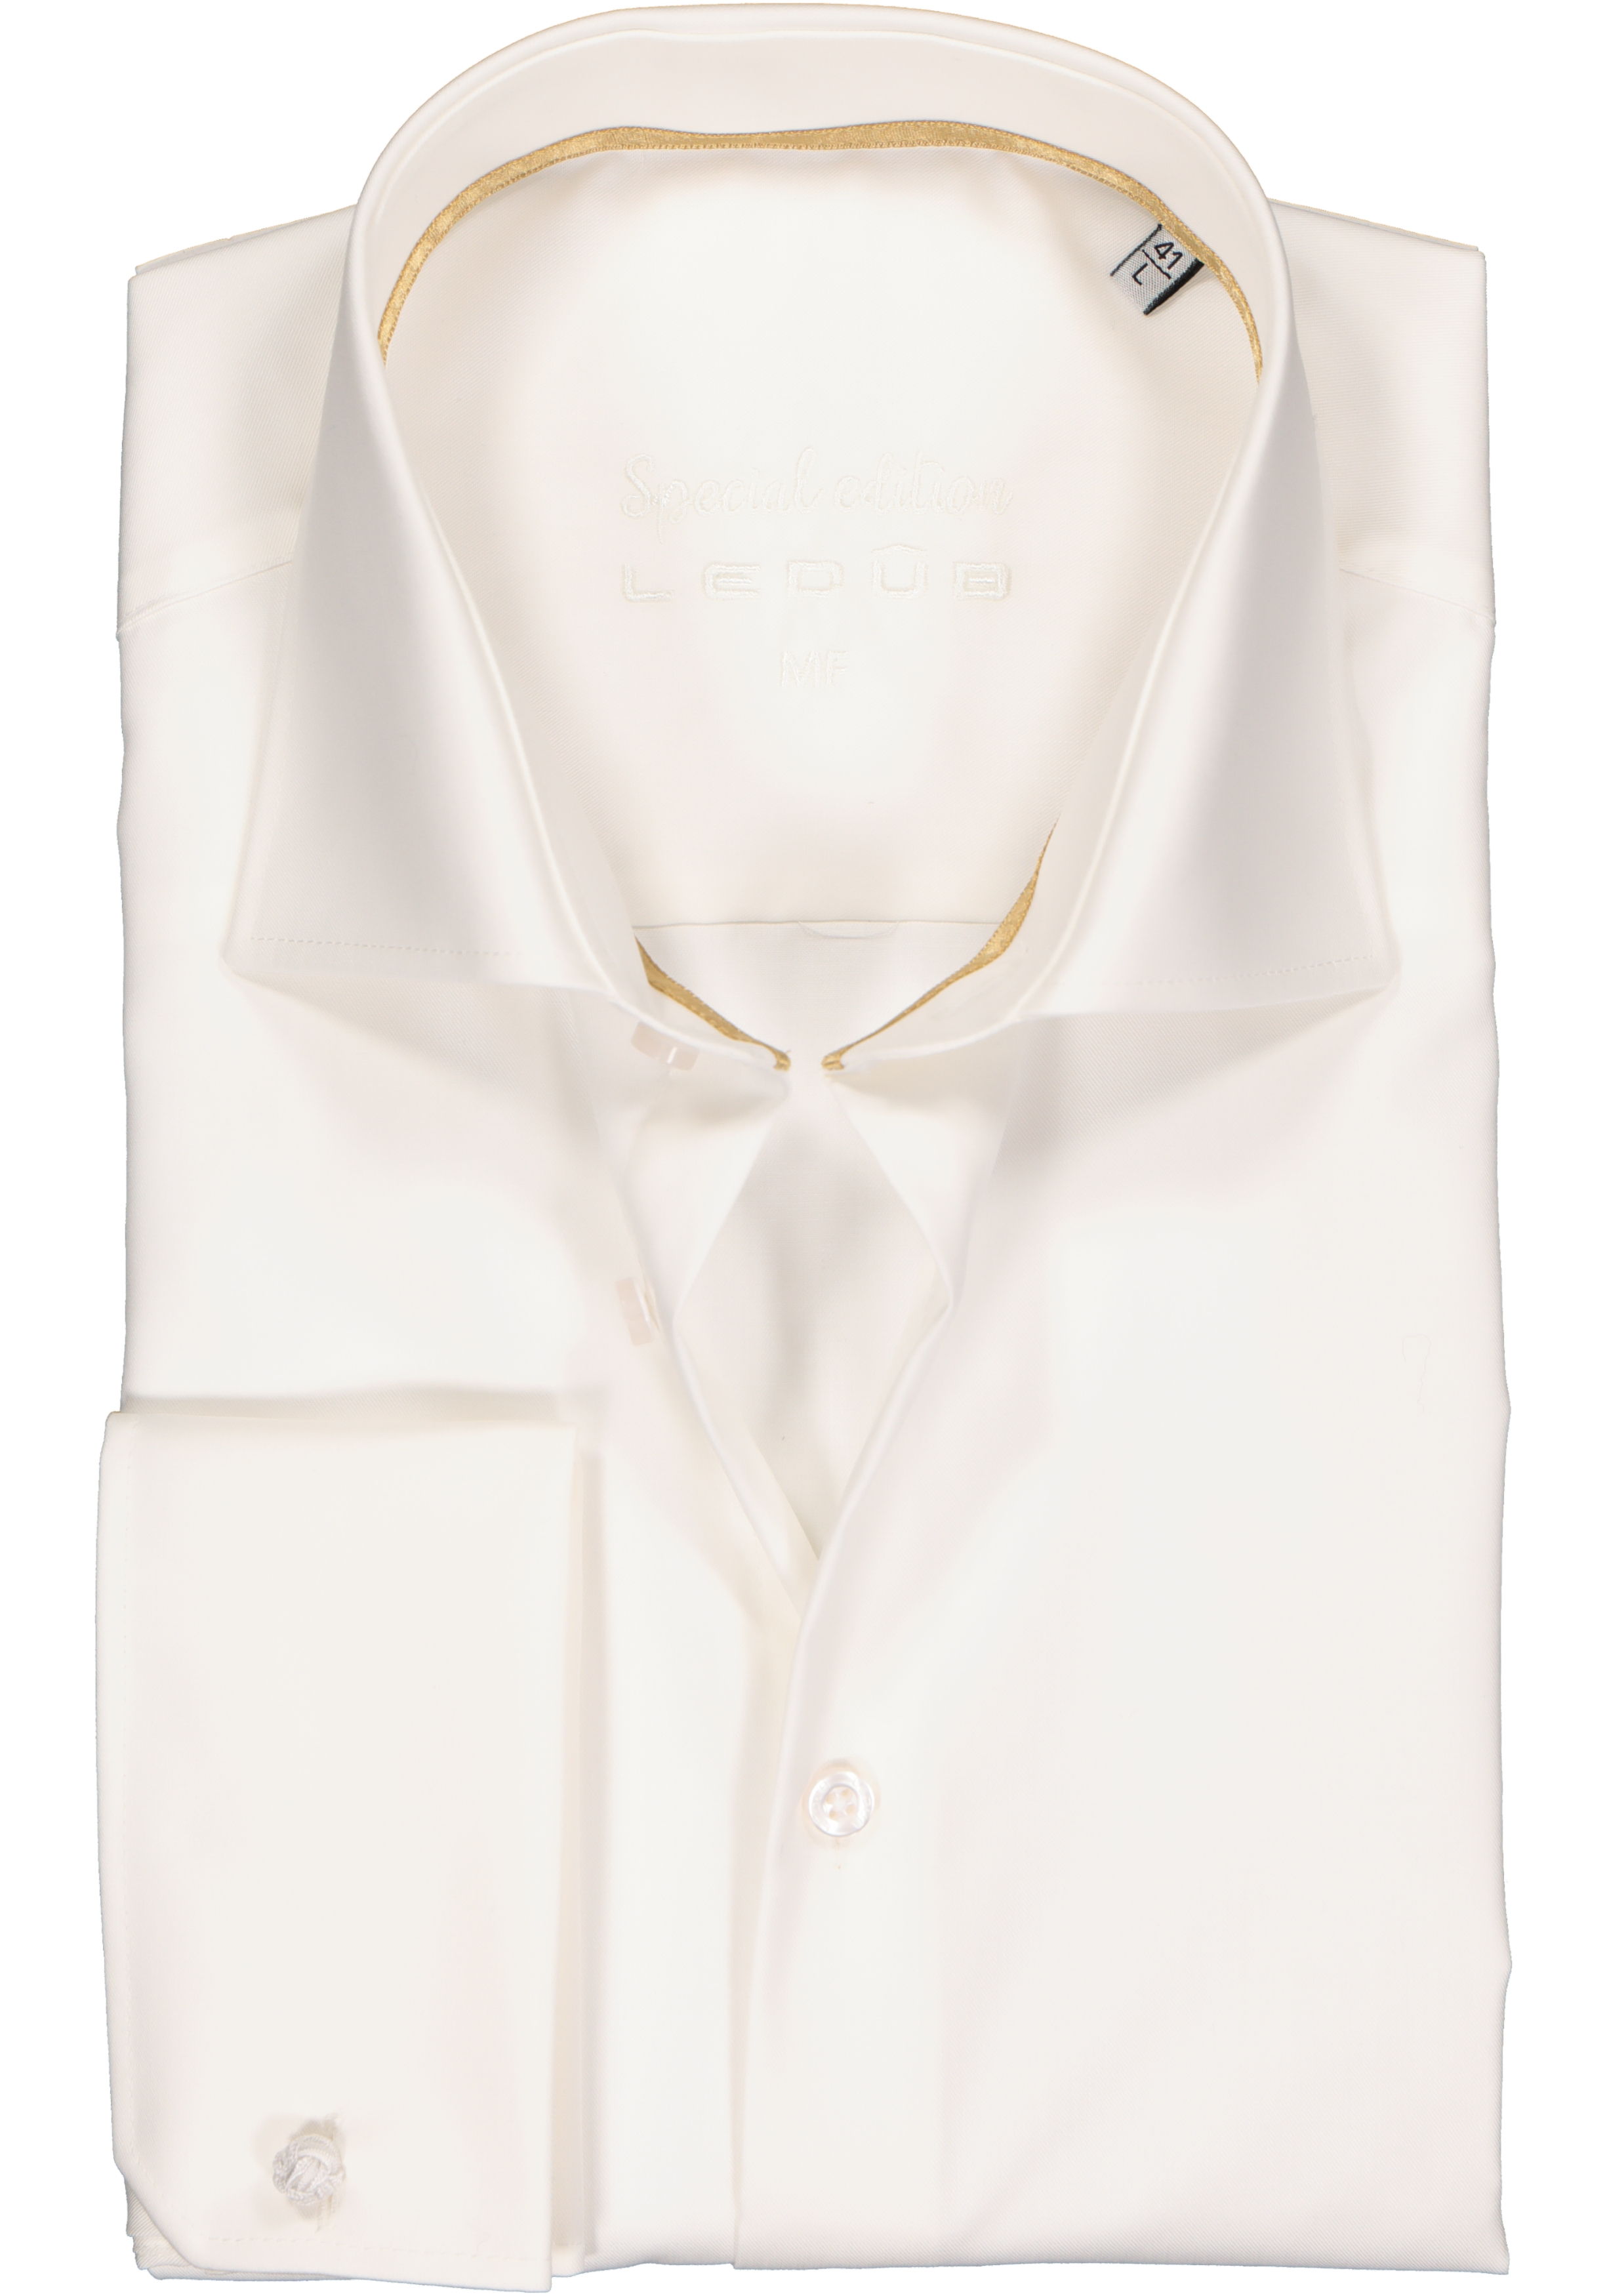 Integreren knoop Humanistisch Ledub modern fit overhemd, dubbele manchet, beige twill - Shop de nieuwste  voorjaarsmode